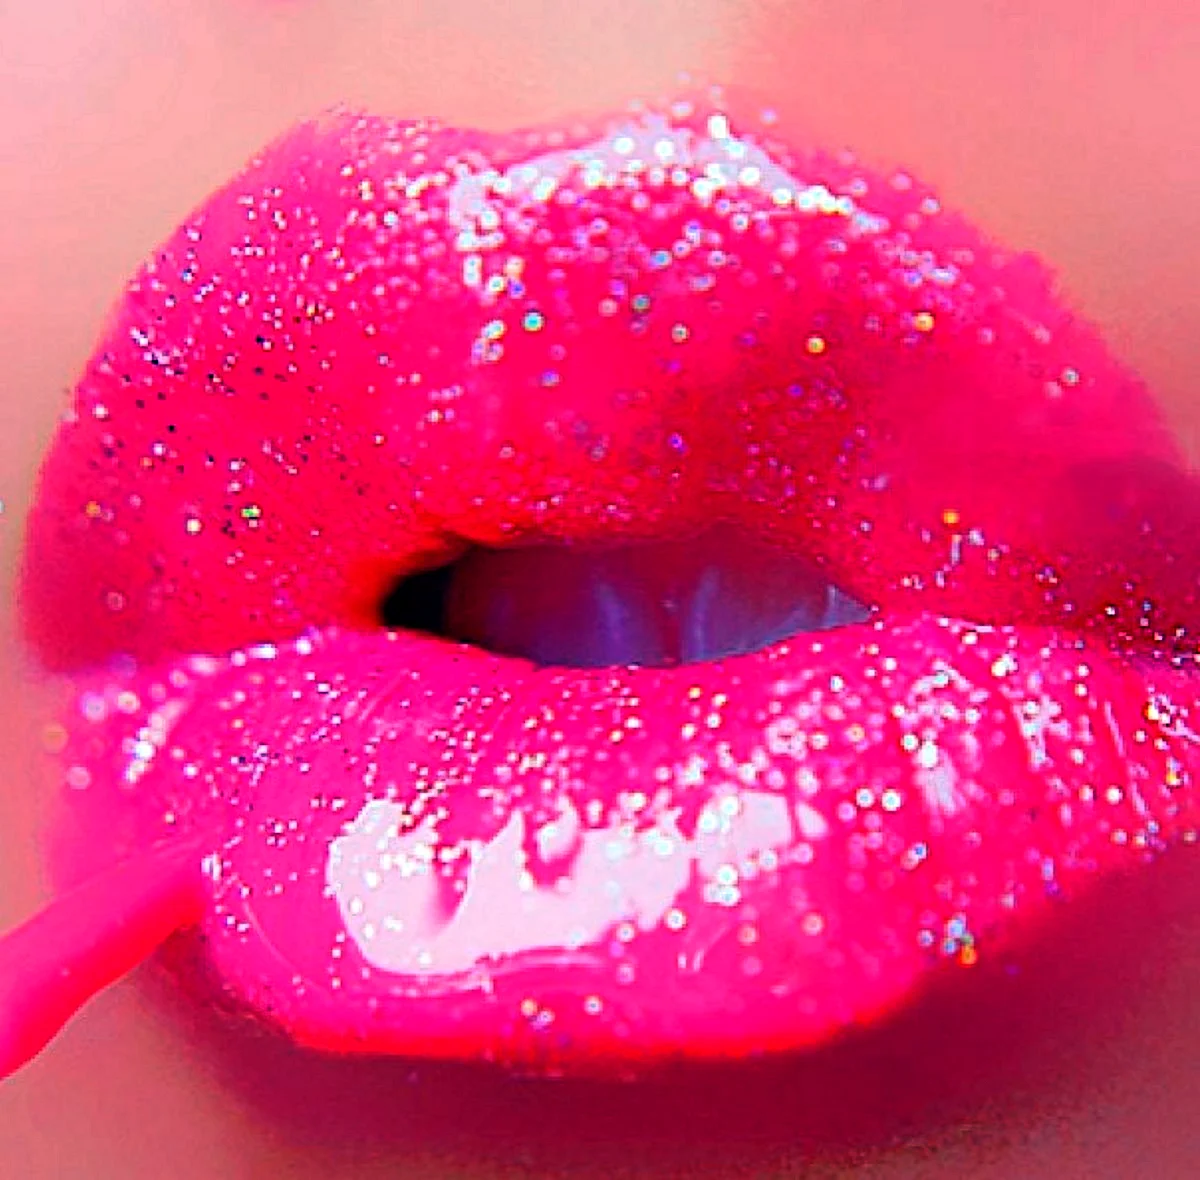 Розовые губы